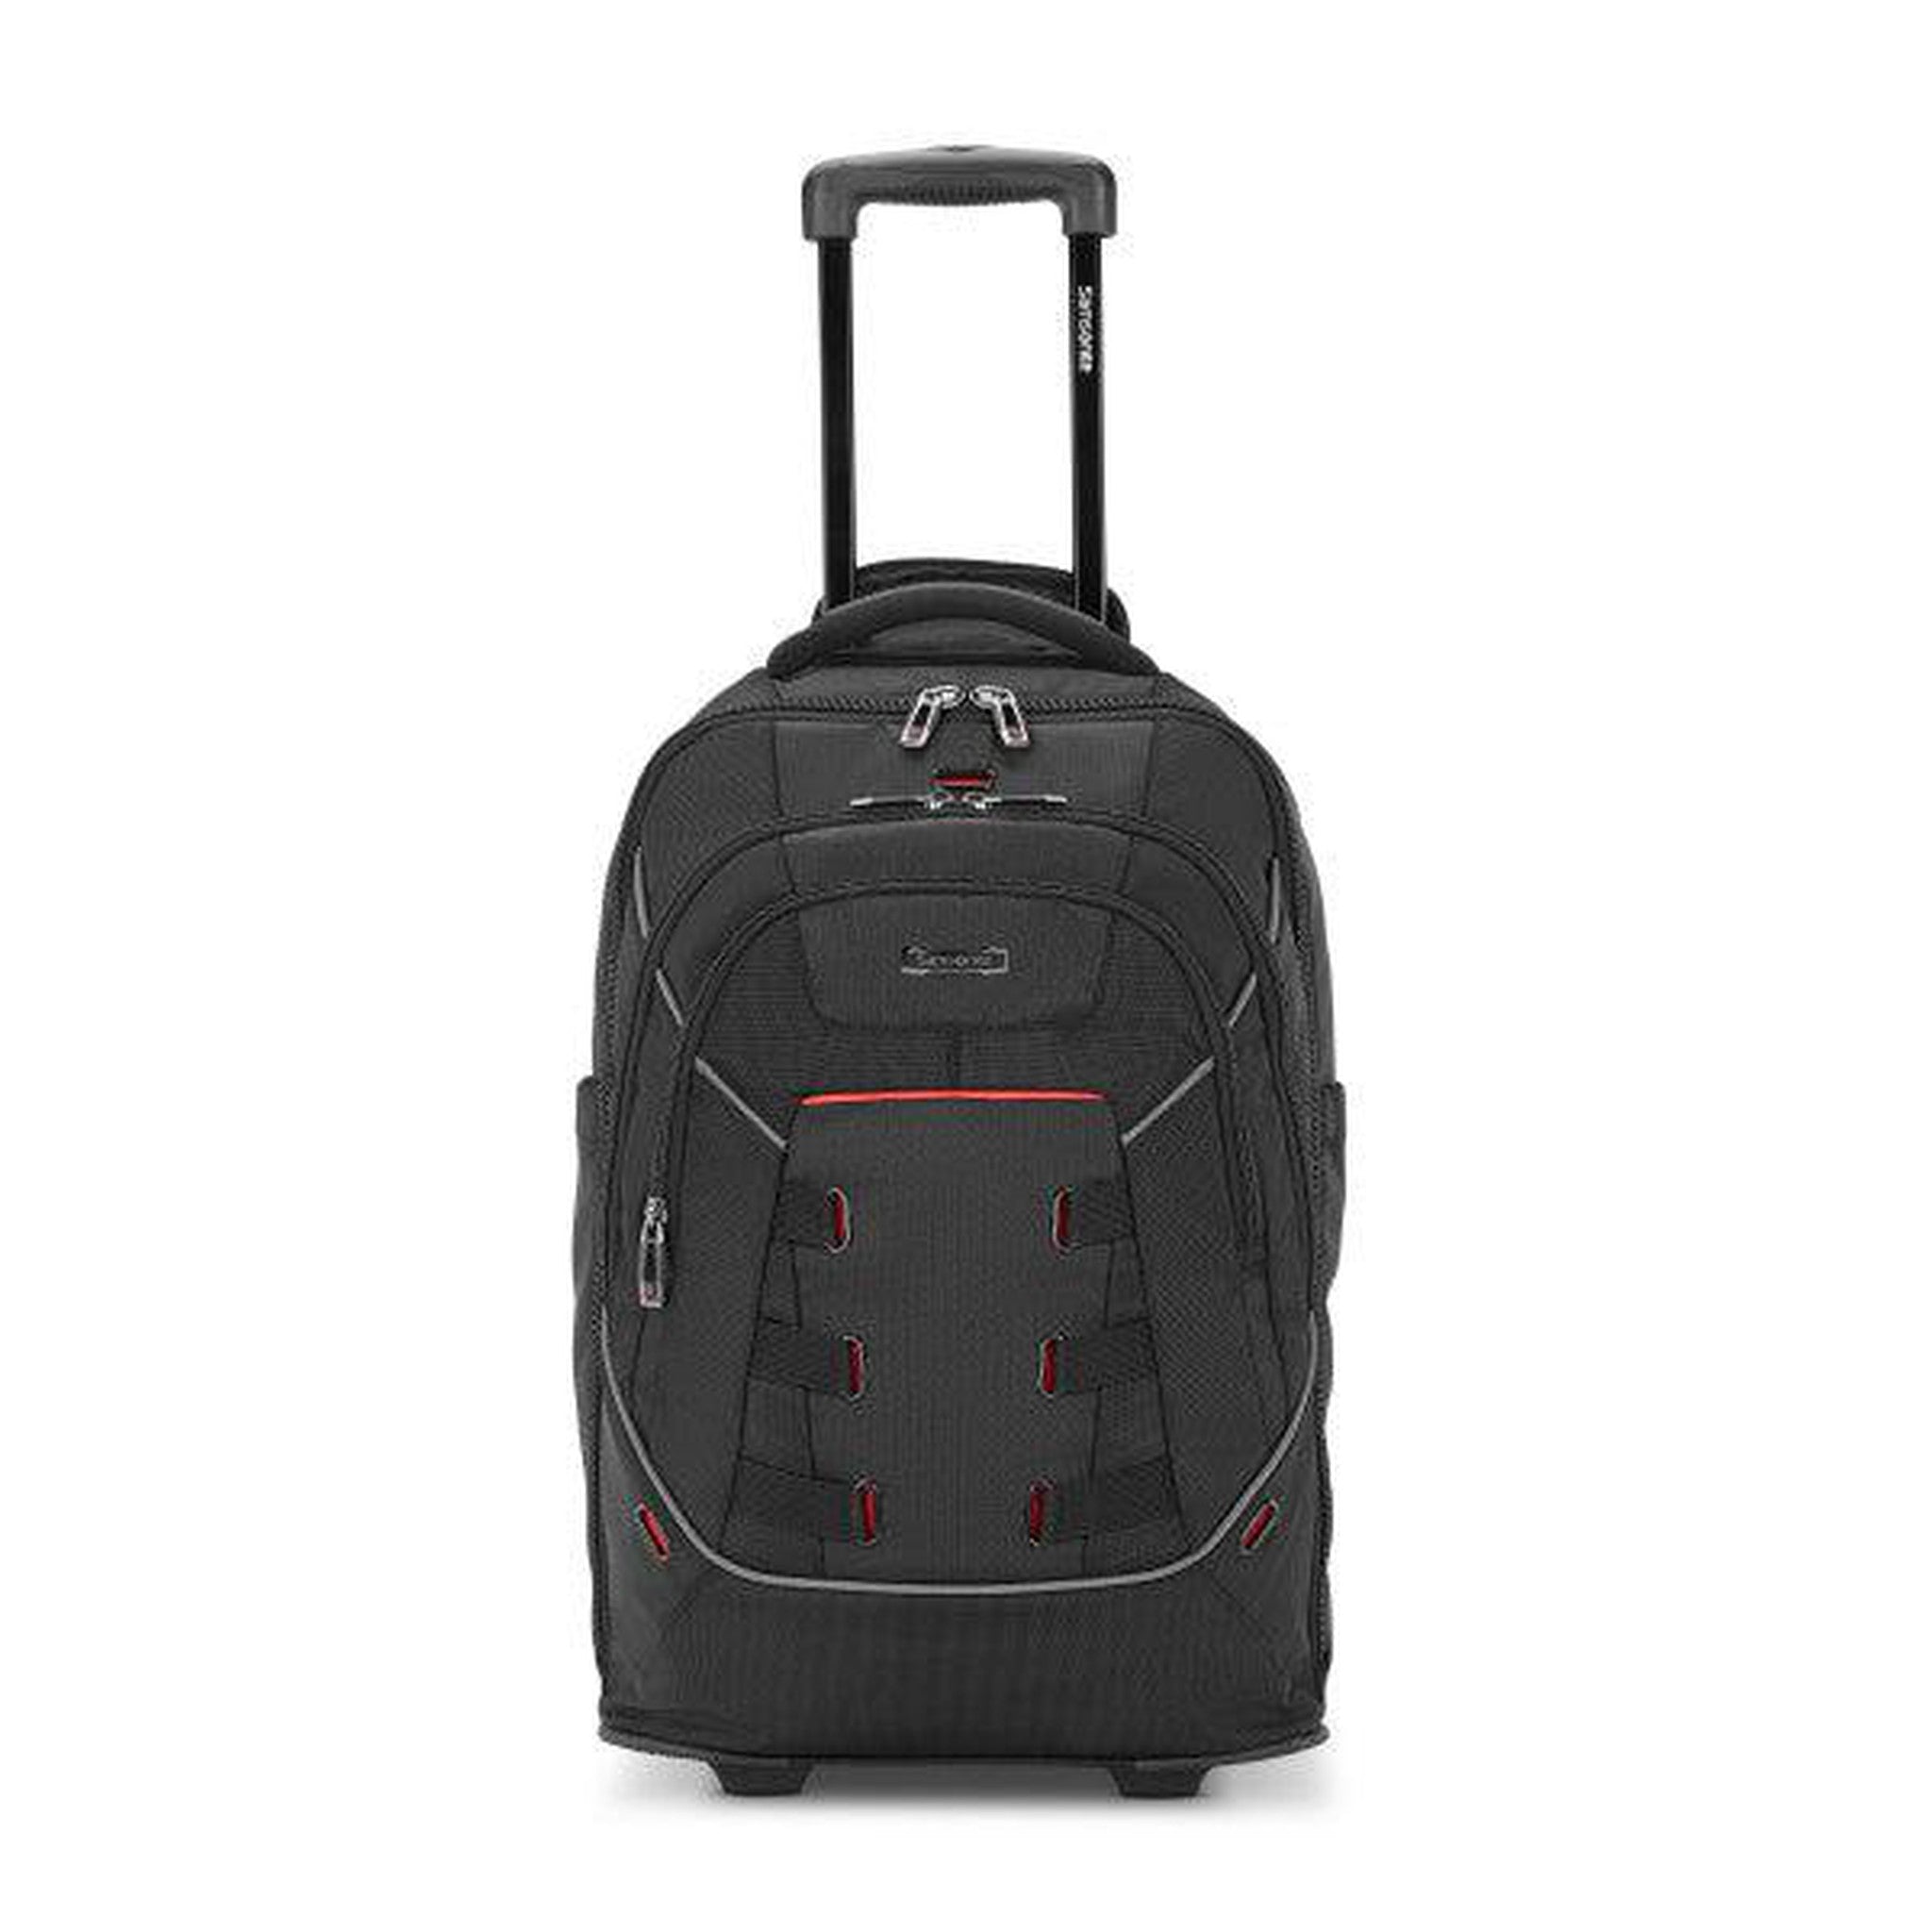 Samsonite Nutech 17" Wheeled Backpack – Luggage Pros